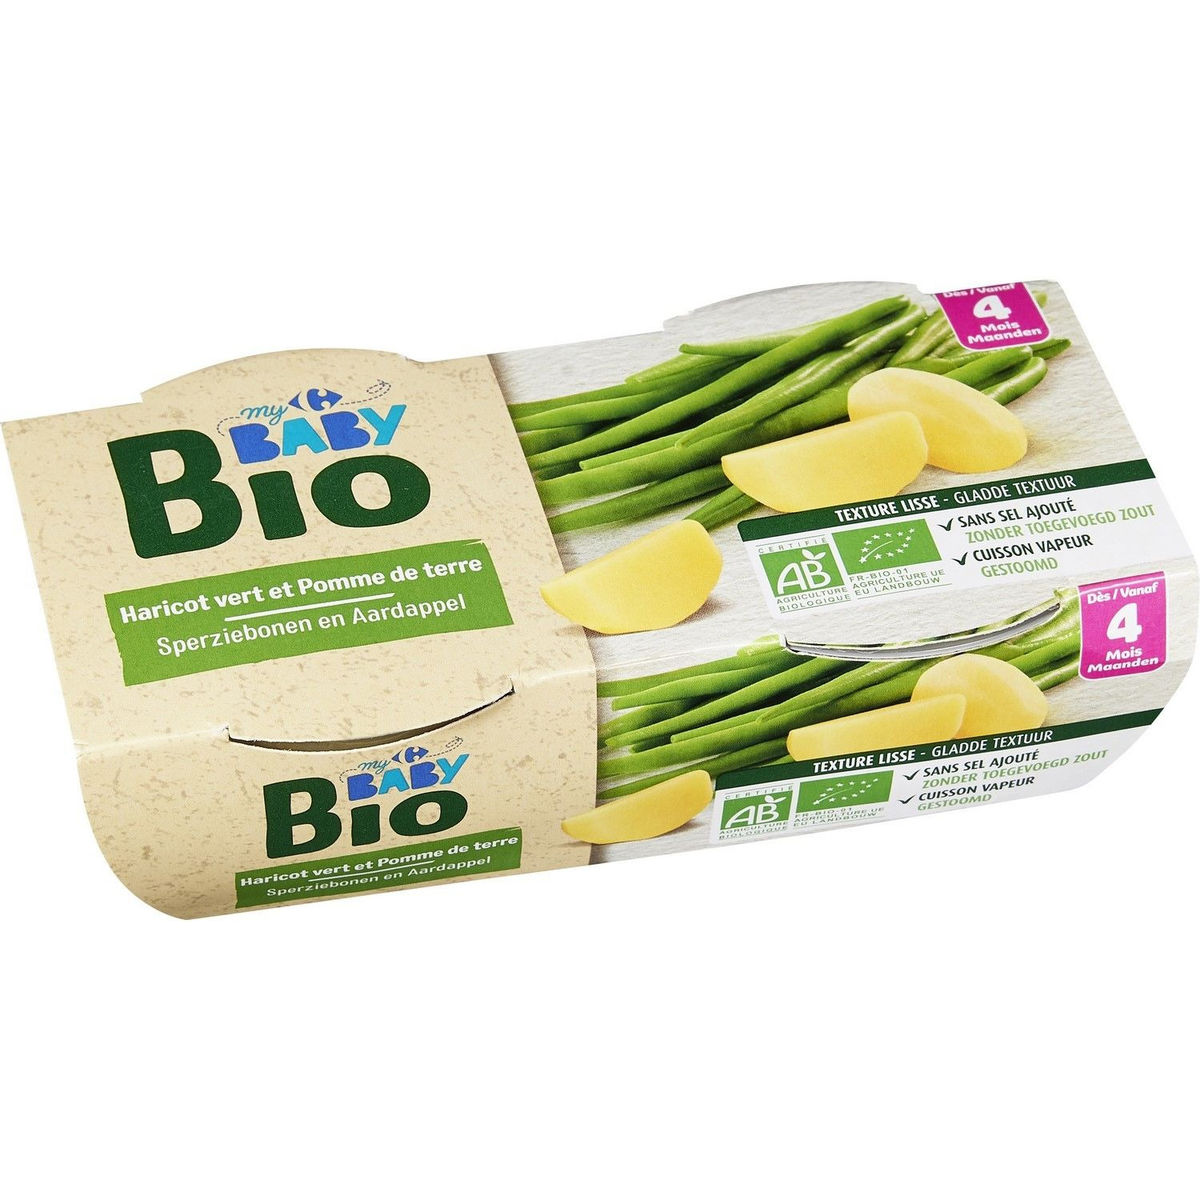 Carrefour Baby Bio Sperziebonen en Aardappel vanaf 4 Maanden 2 x 120 g